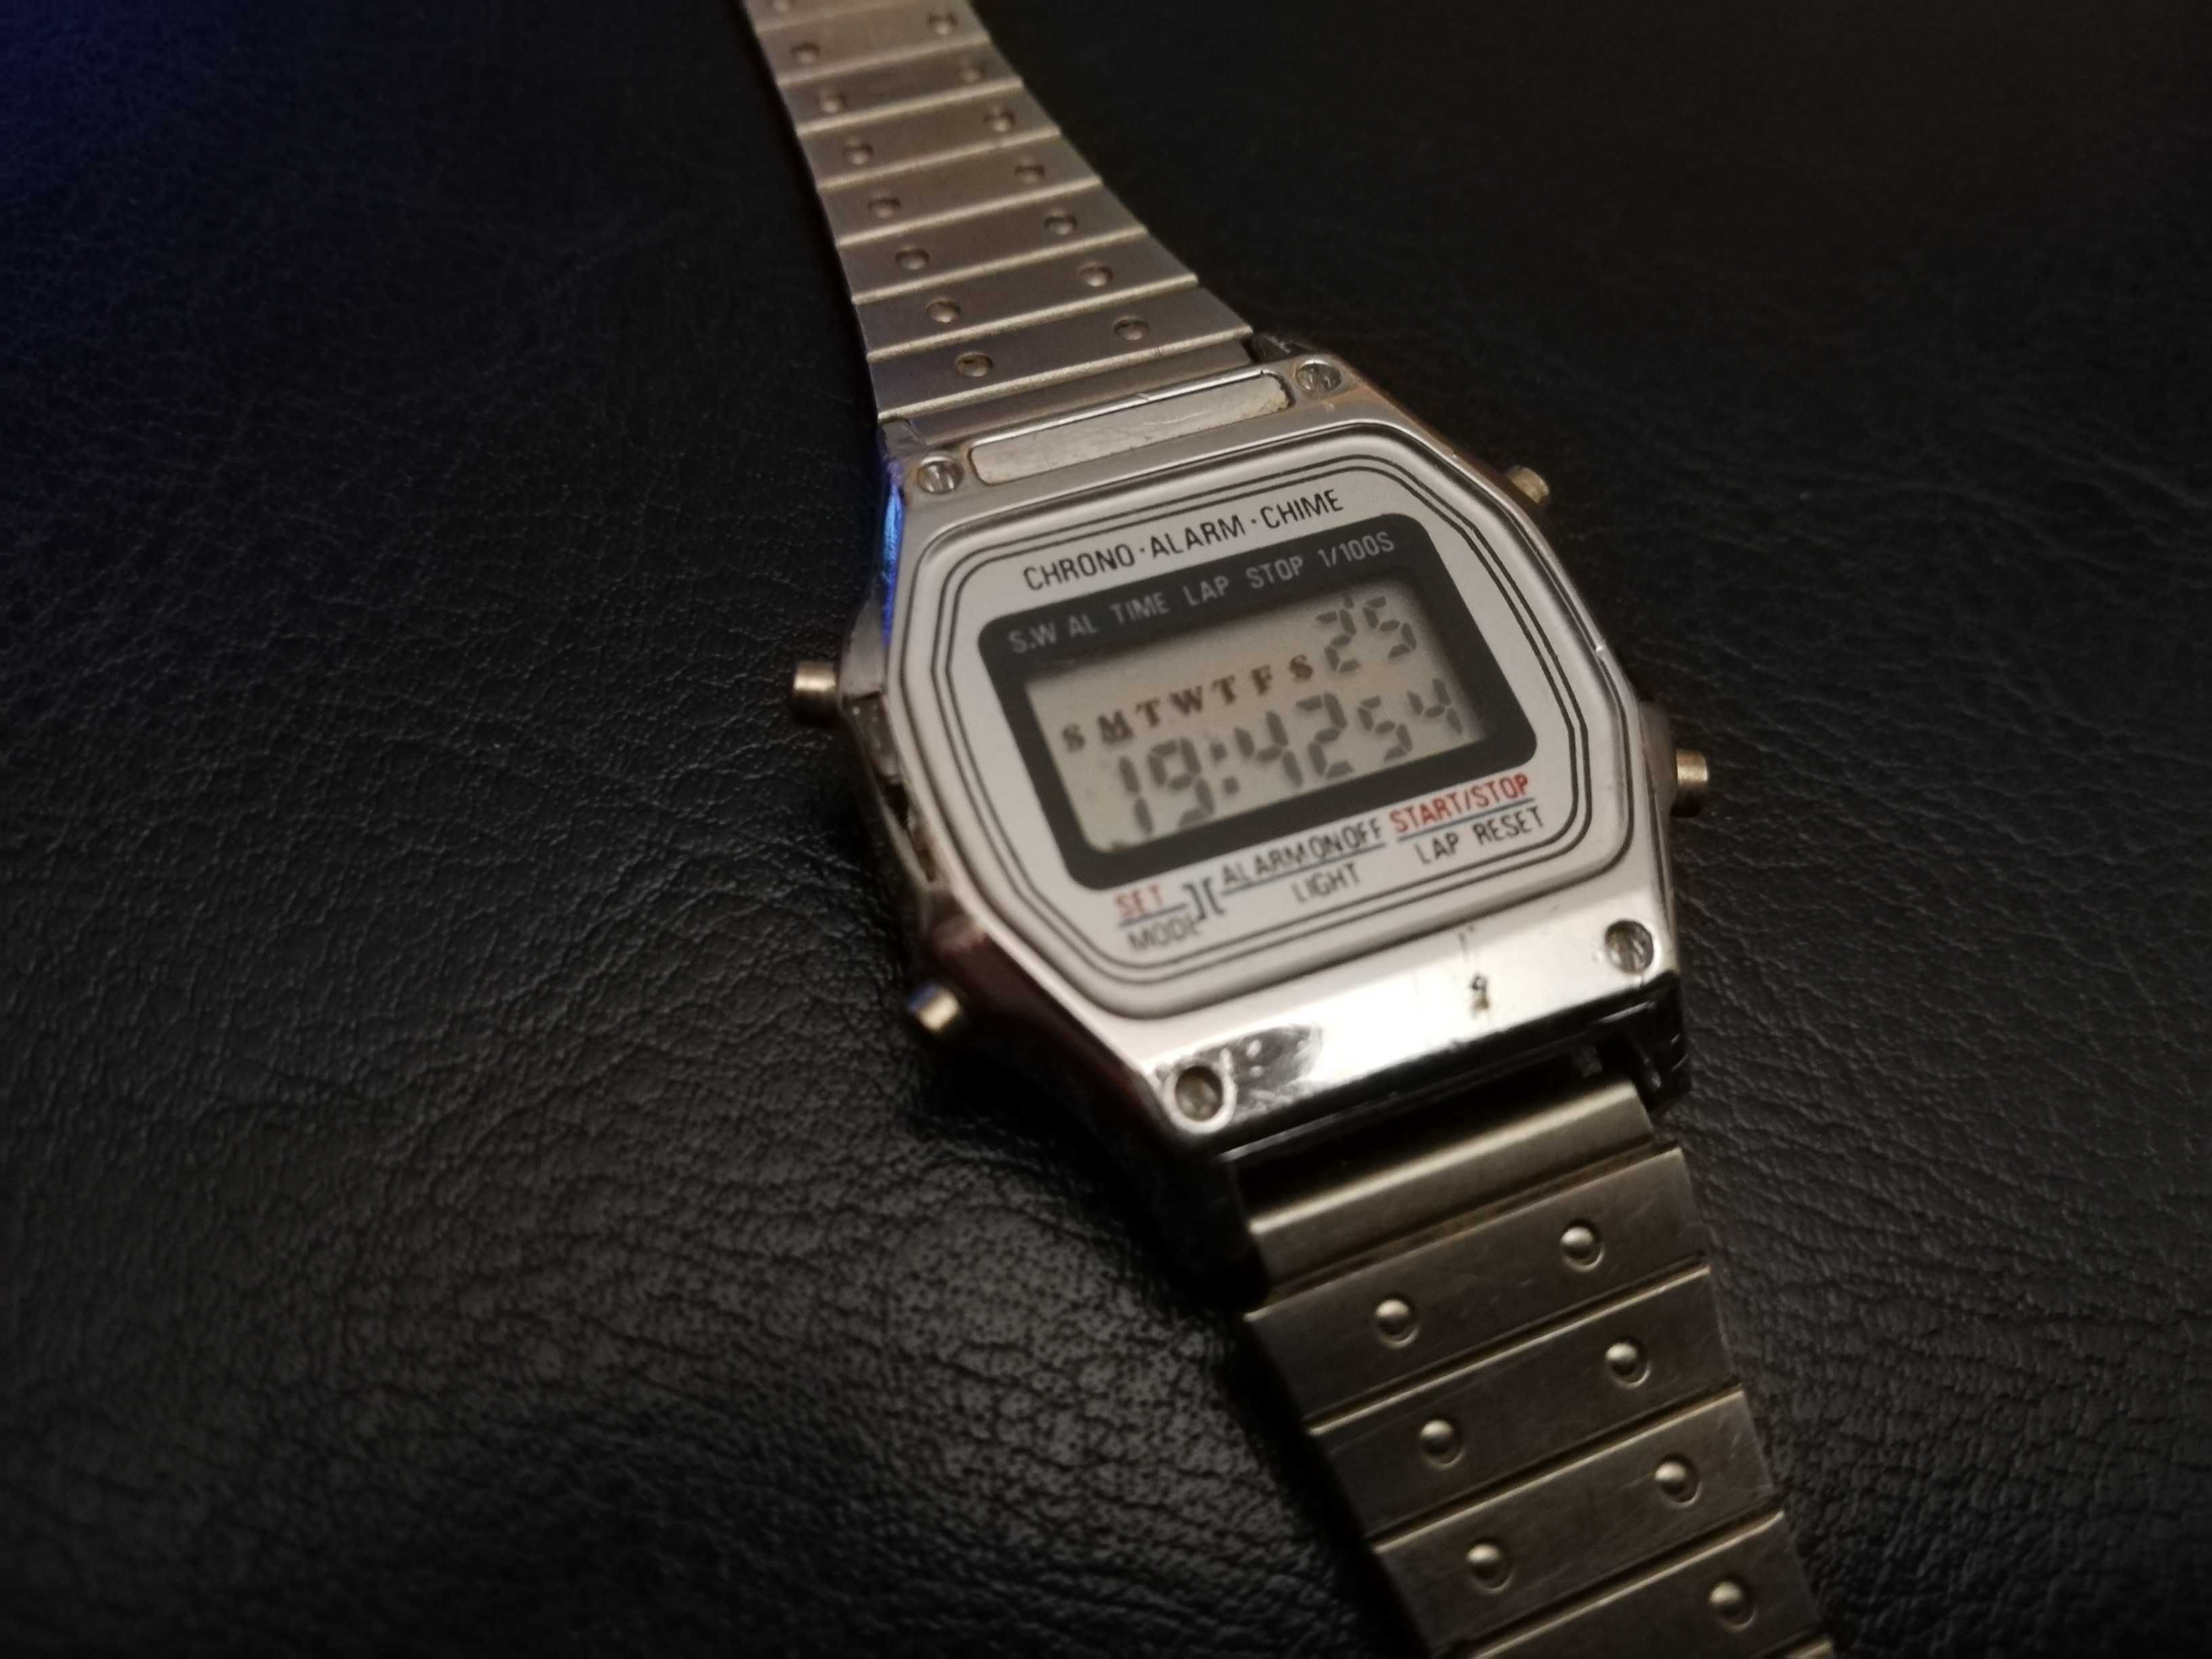 Sprzedam damski zegarek vintage Tempic elektronik na bransolecie